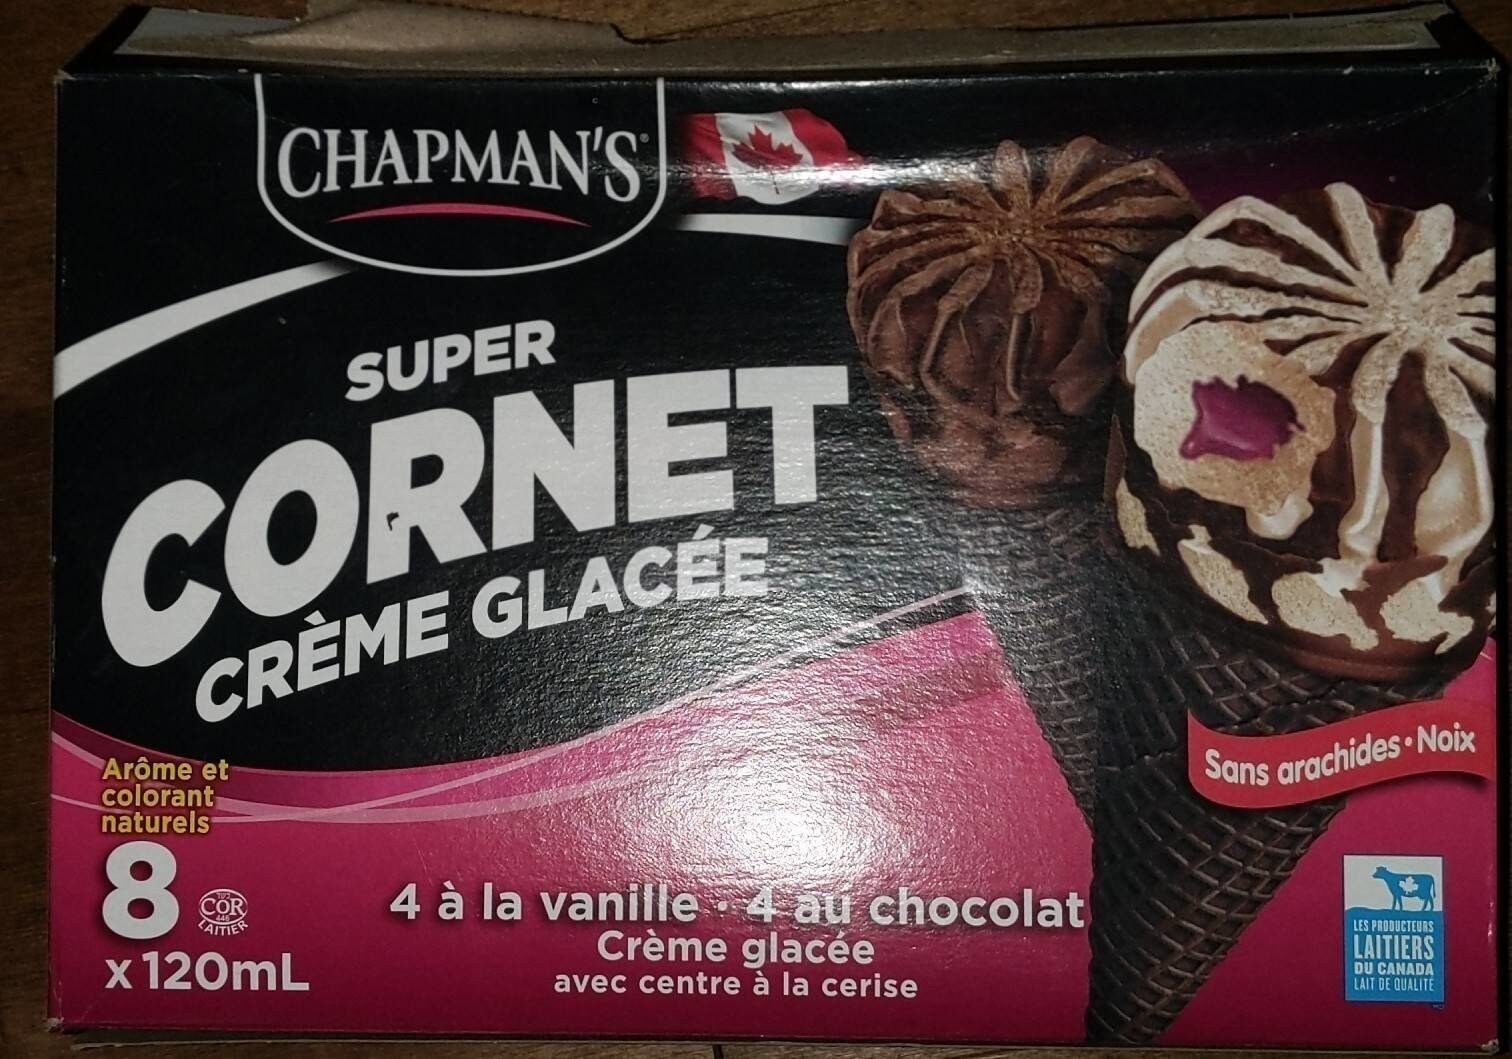 Super Cornet crème glacée - Product